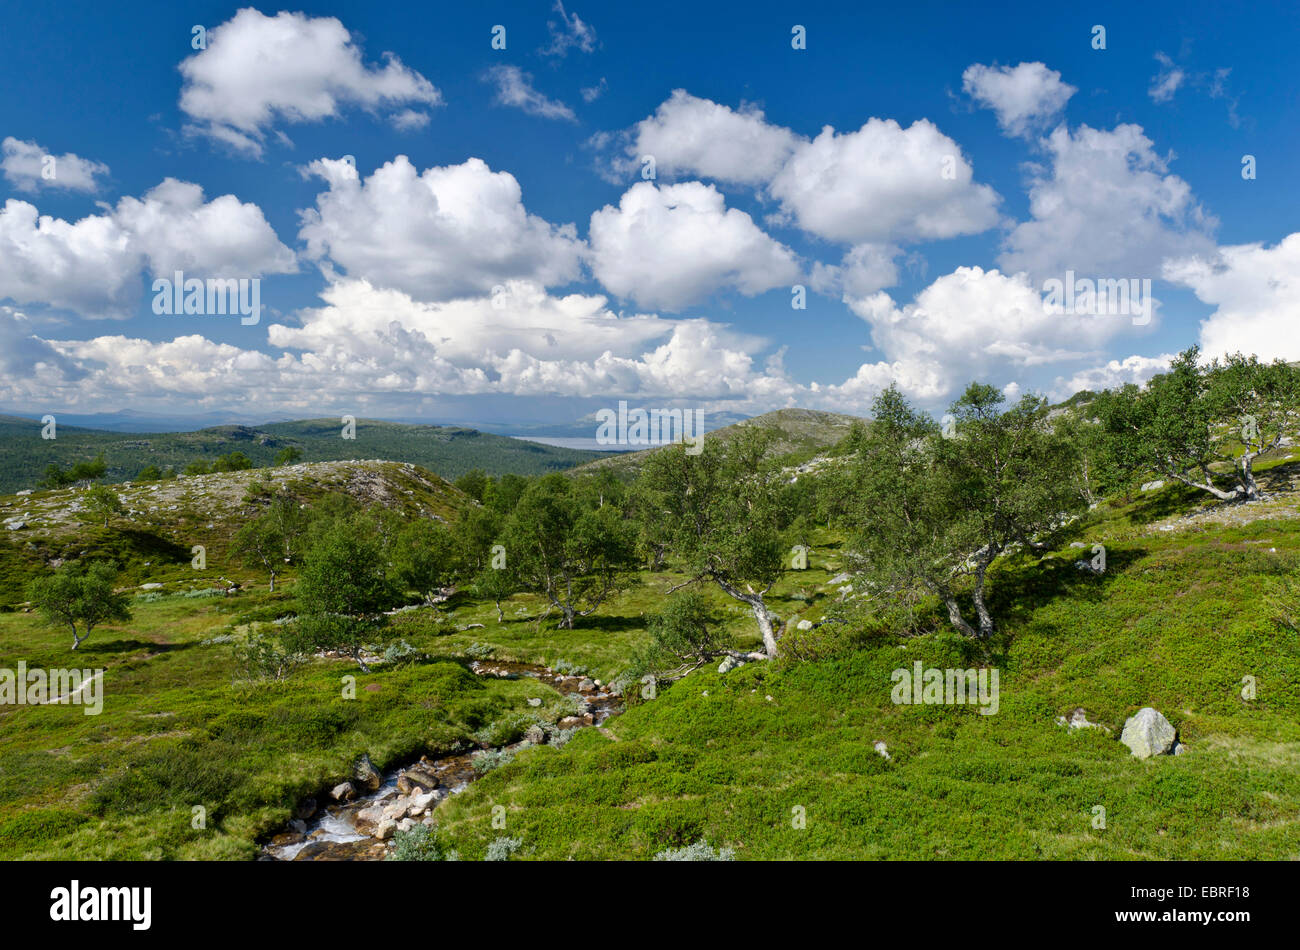 Paysage de montagne au parc national Femundsmarka avec arbres et arbustes, de la Norvège, Hedmark Fylke, Parc National Femundsmarka Banque D'Images